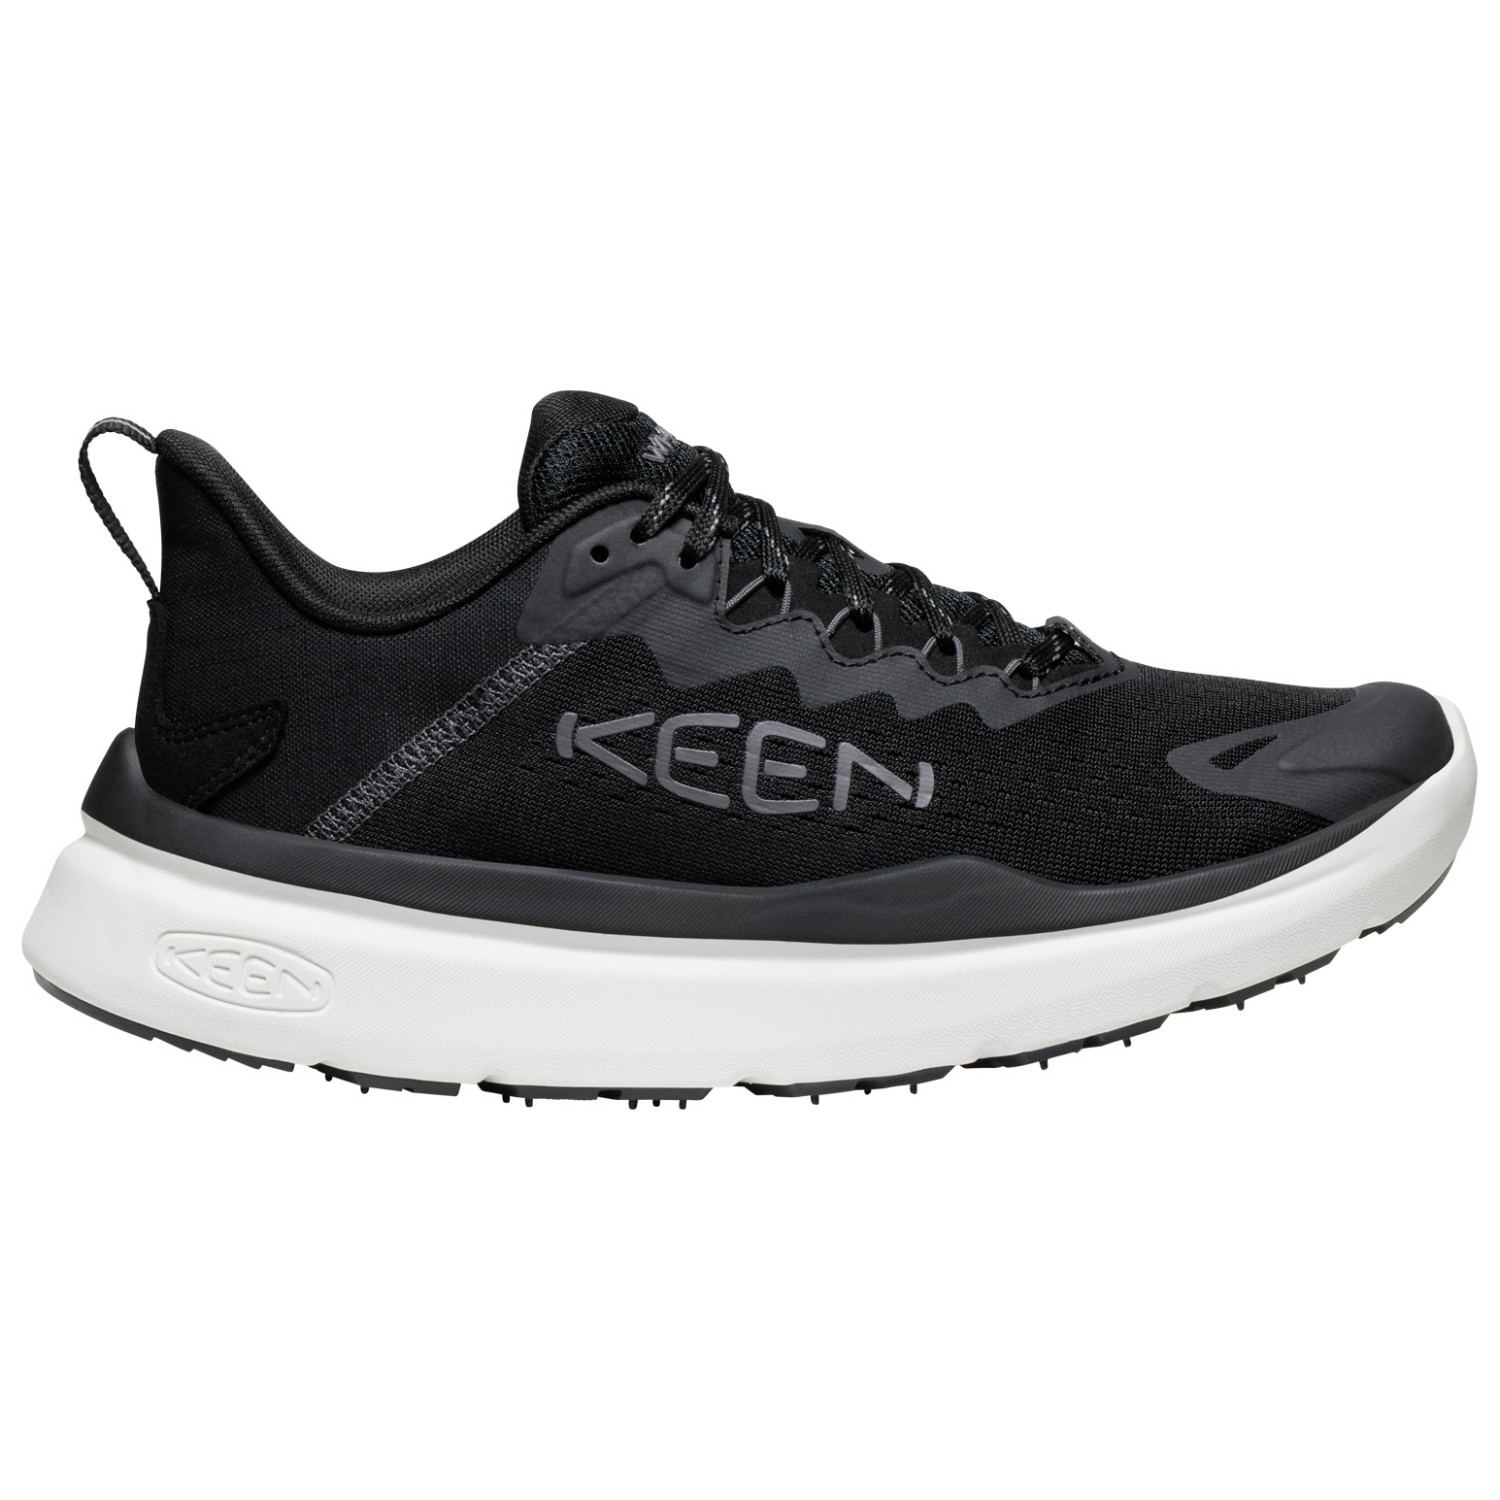 Мультиспортивная обувь Keen Women's WK450, цвет Black/Star White